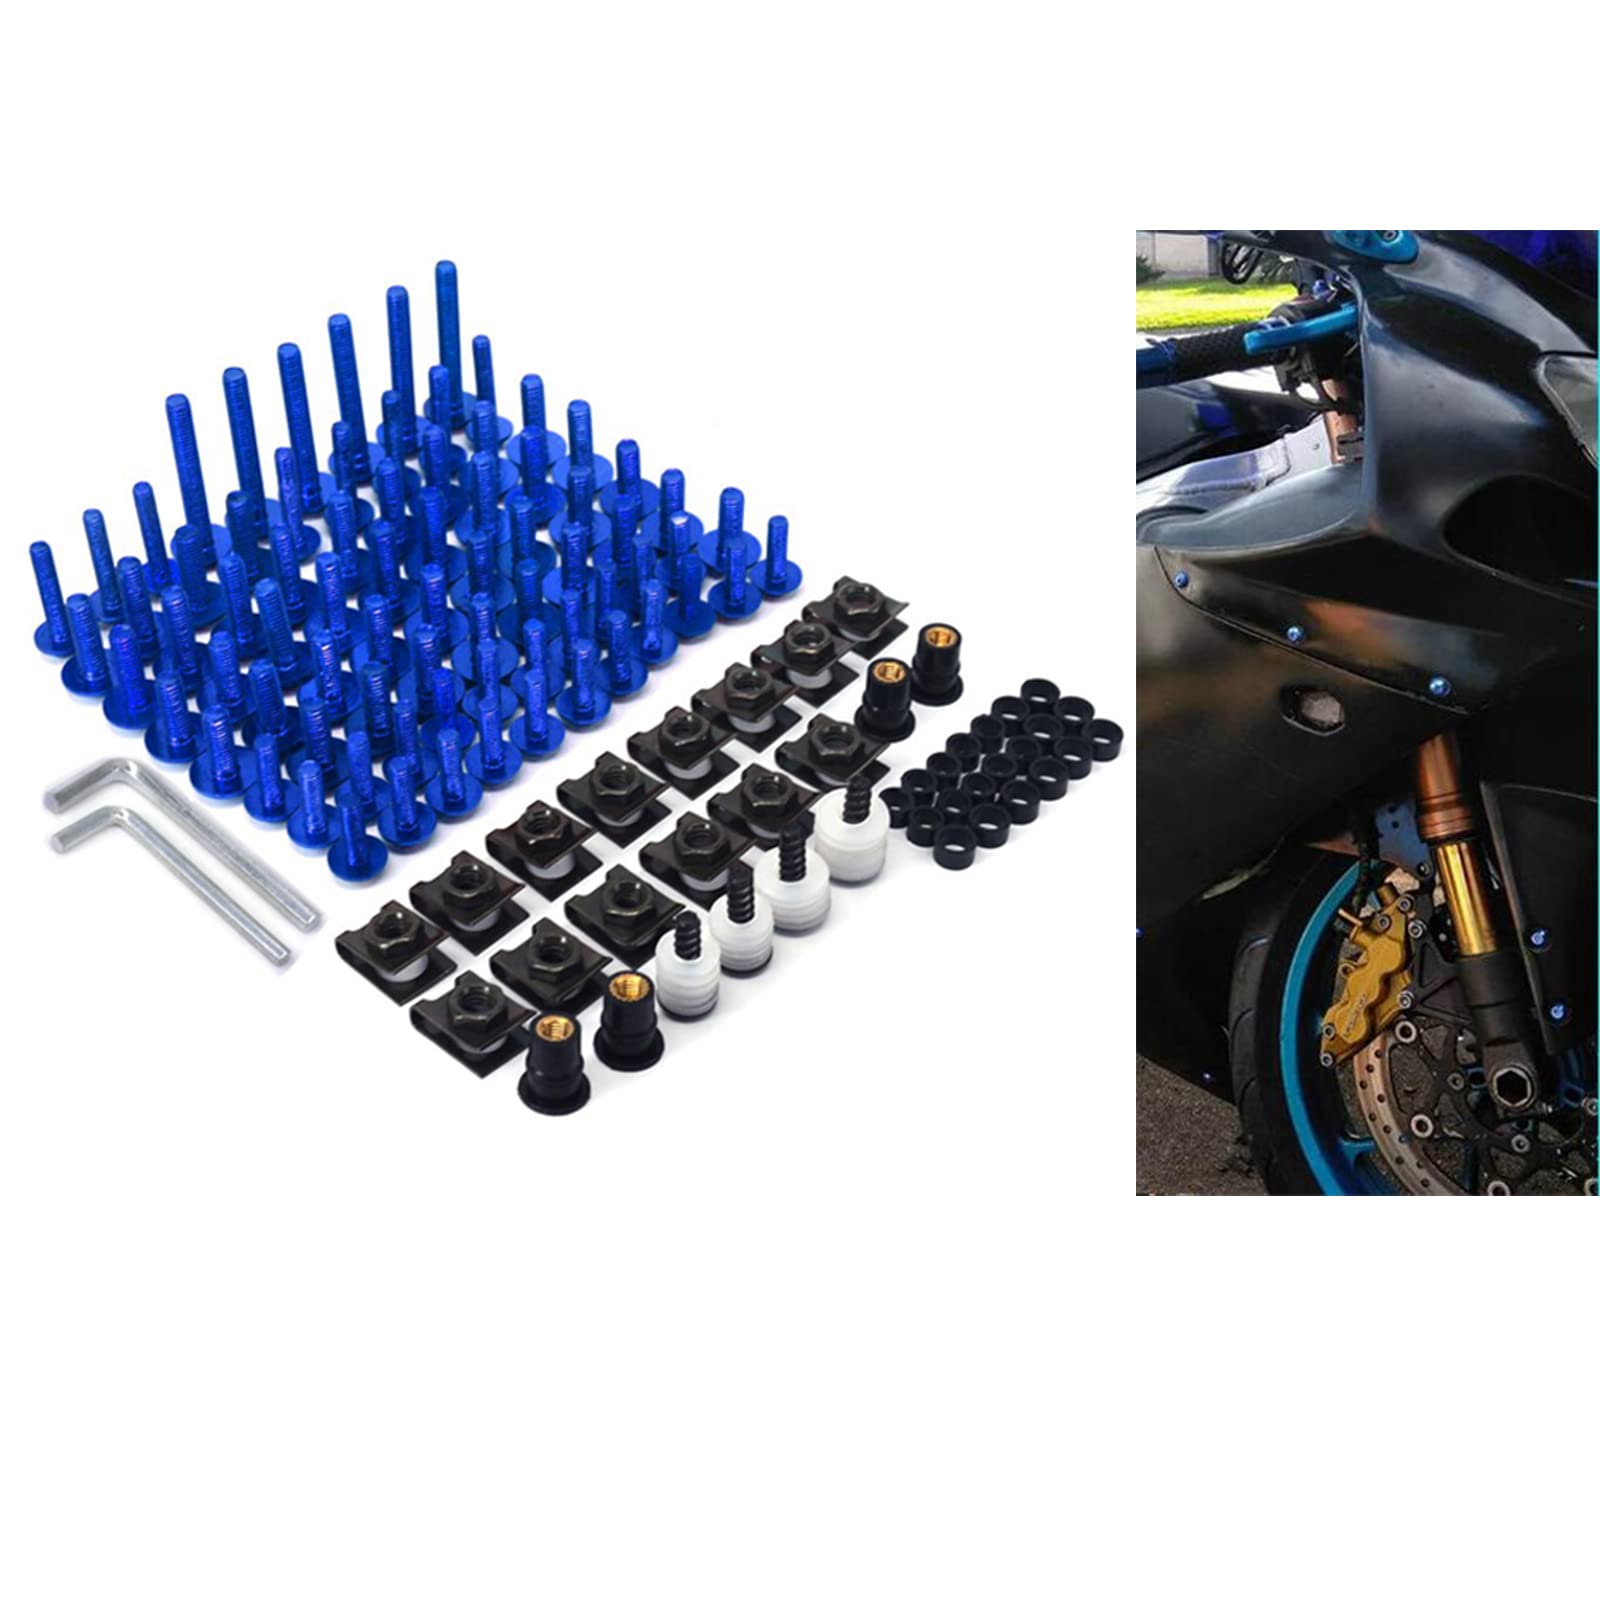 An Xin CNC Aluminium Universal Billet komplette Motorrad Scheibenverkleidungsschrauben Kit Befestigungsclip Karosserie Schrauben Mutter für YZ125 YZ250 YZ250F YZ450F WR250F WR450F (blau)